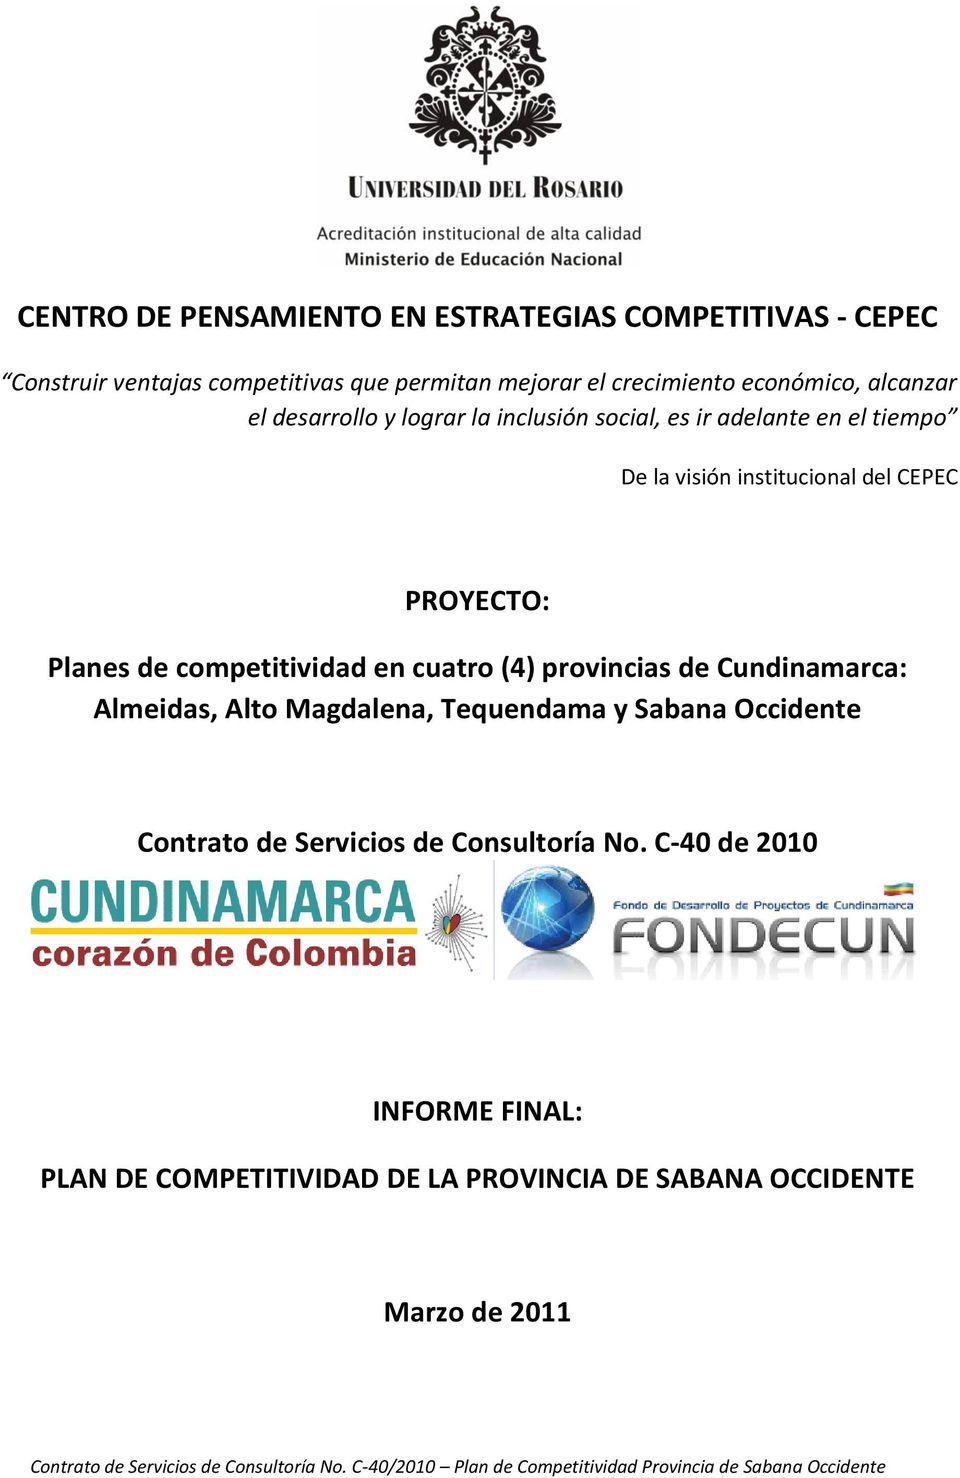 PROYECTO: Planes de competitividad en cuatro (4) provincias de Cundinamarca: Almeidas, Alto Magdalena, Tequendama y Sabana Occidente